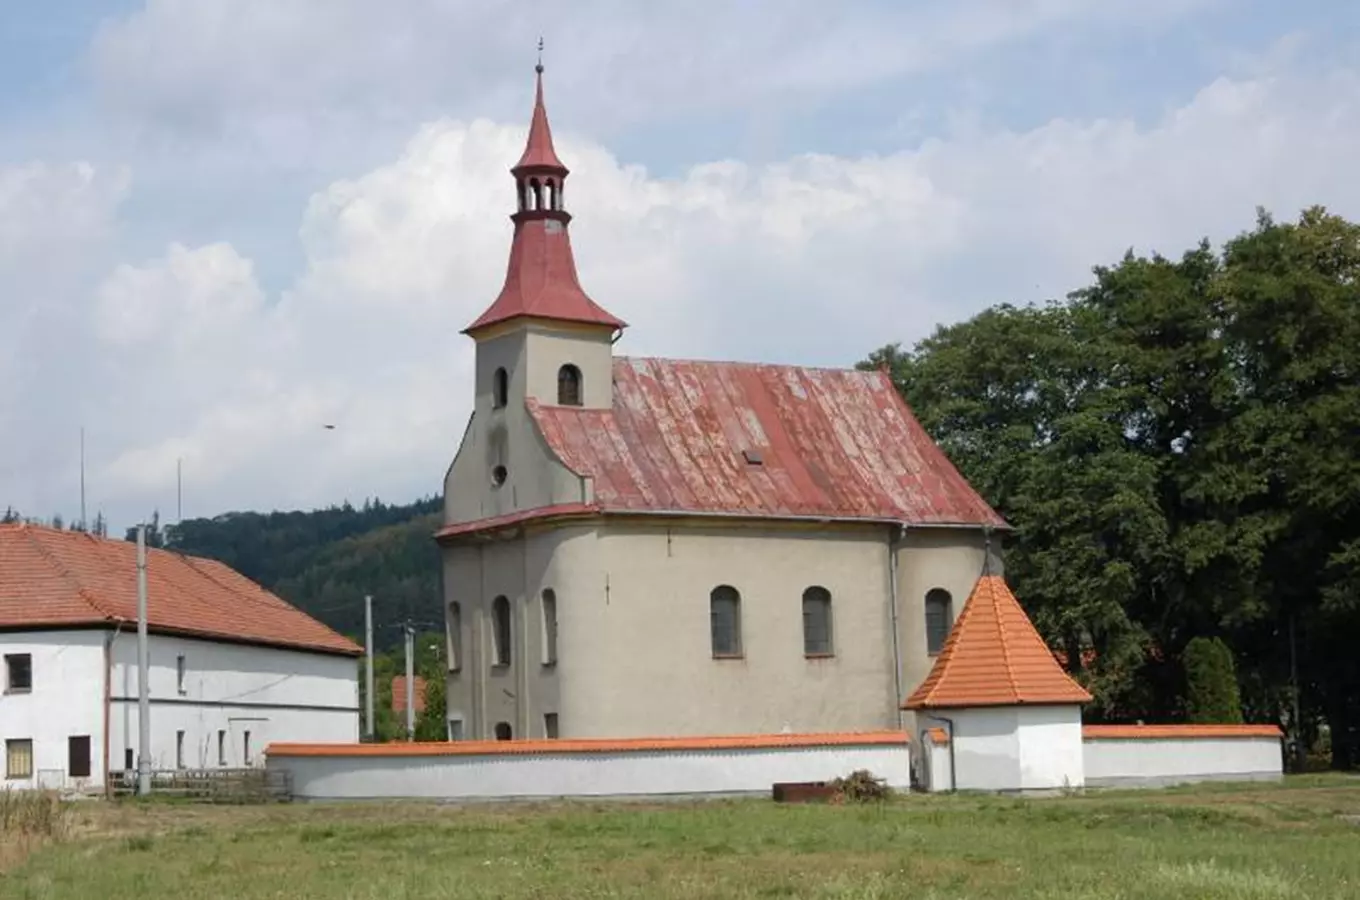 Kostel sv. Urbana v Bělotíně – Nejdku